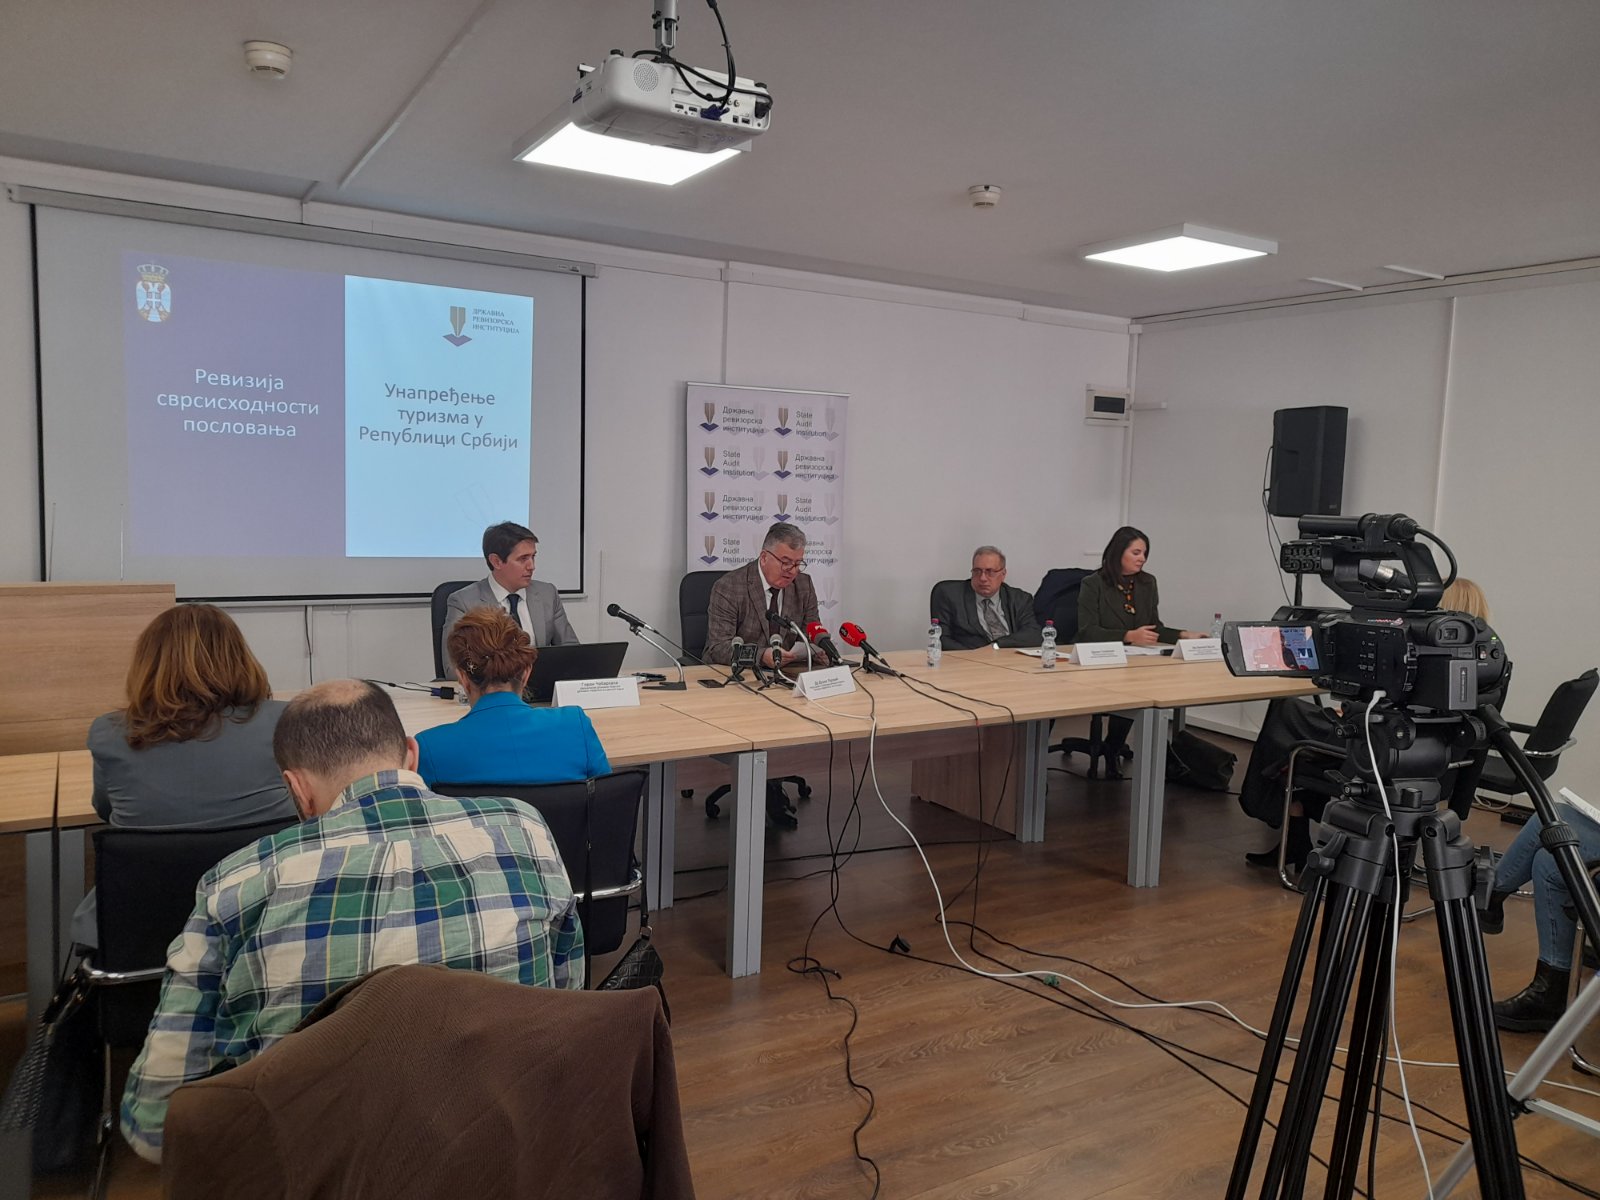 Представљен извештај о ревизији сврсисходности пословања „Унапређење туризма у Републици Србији“